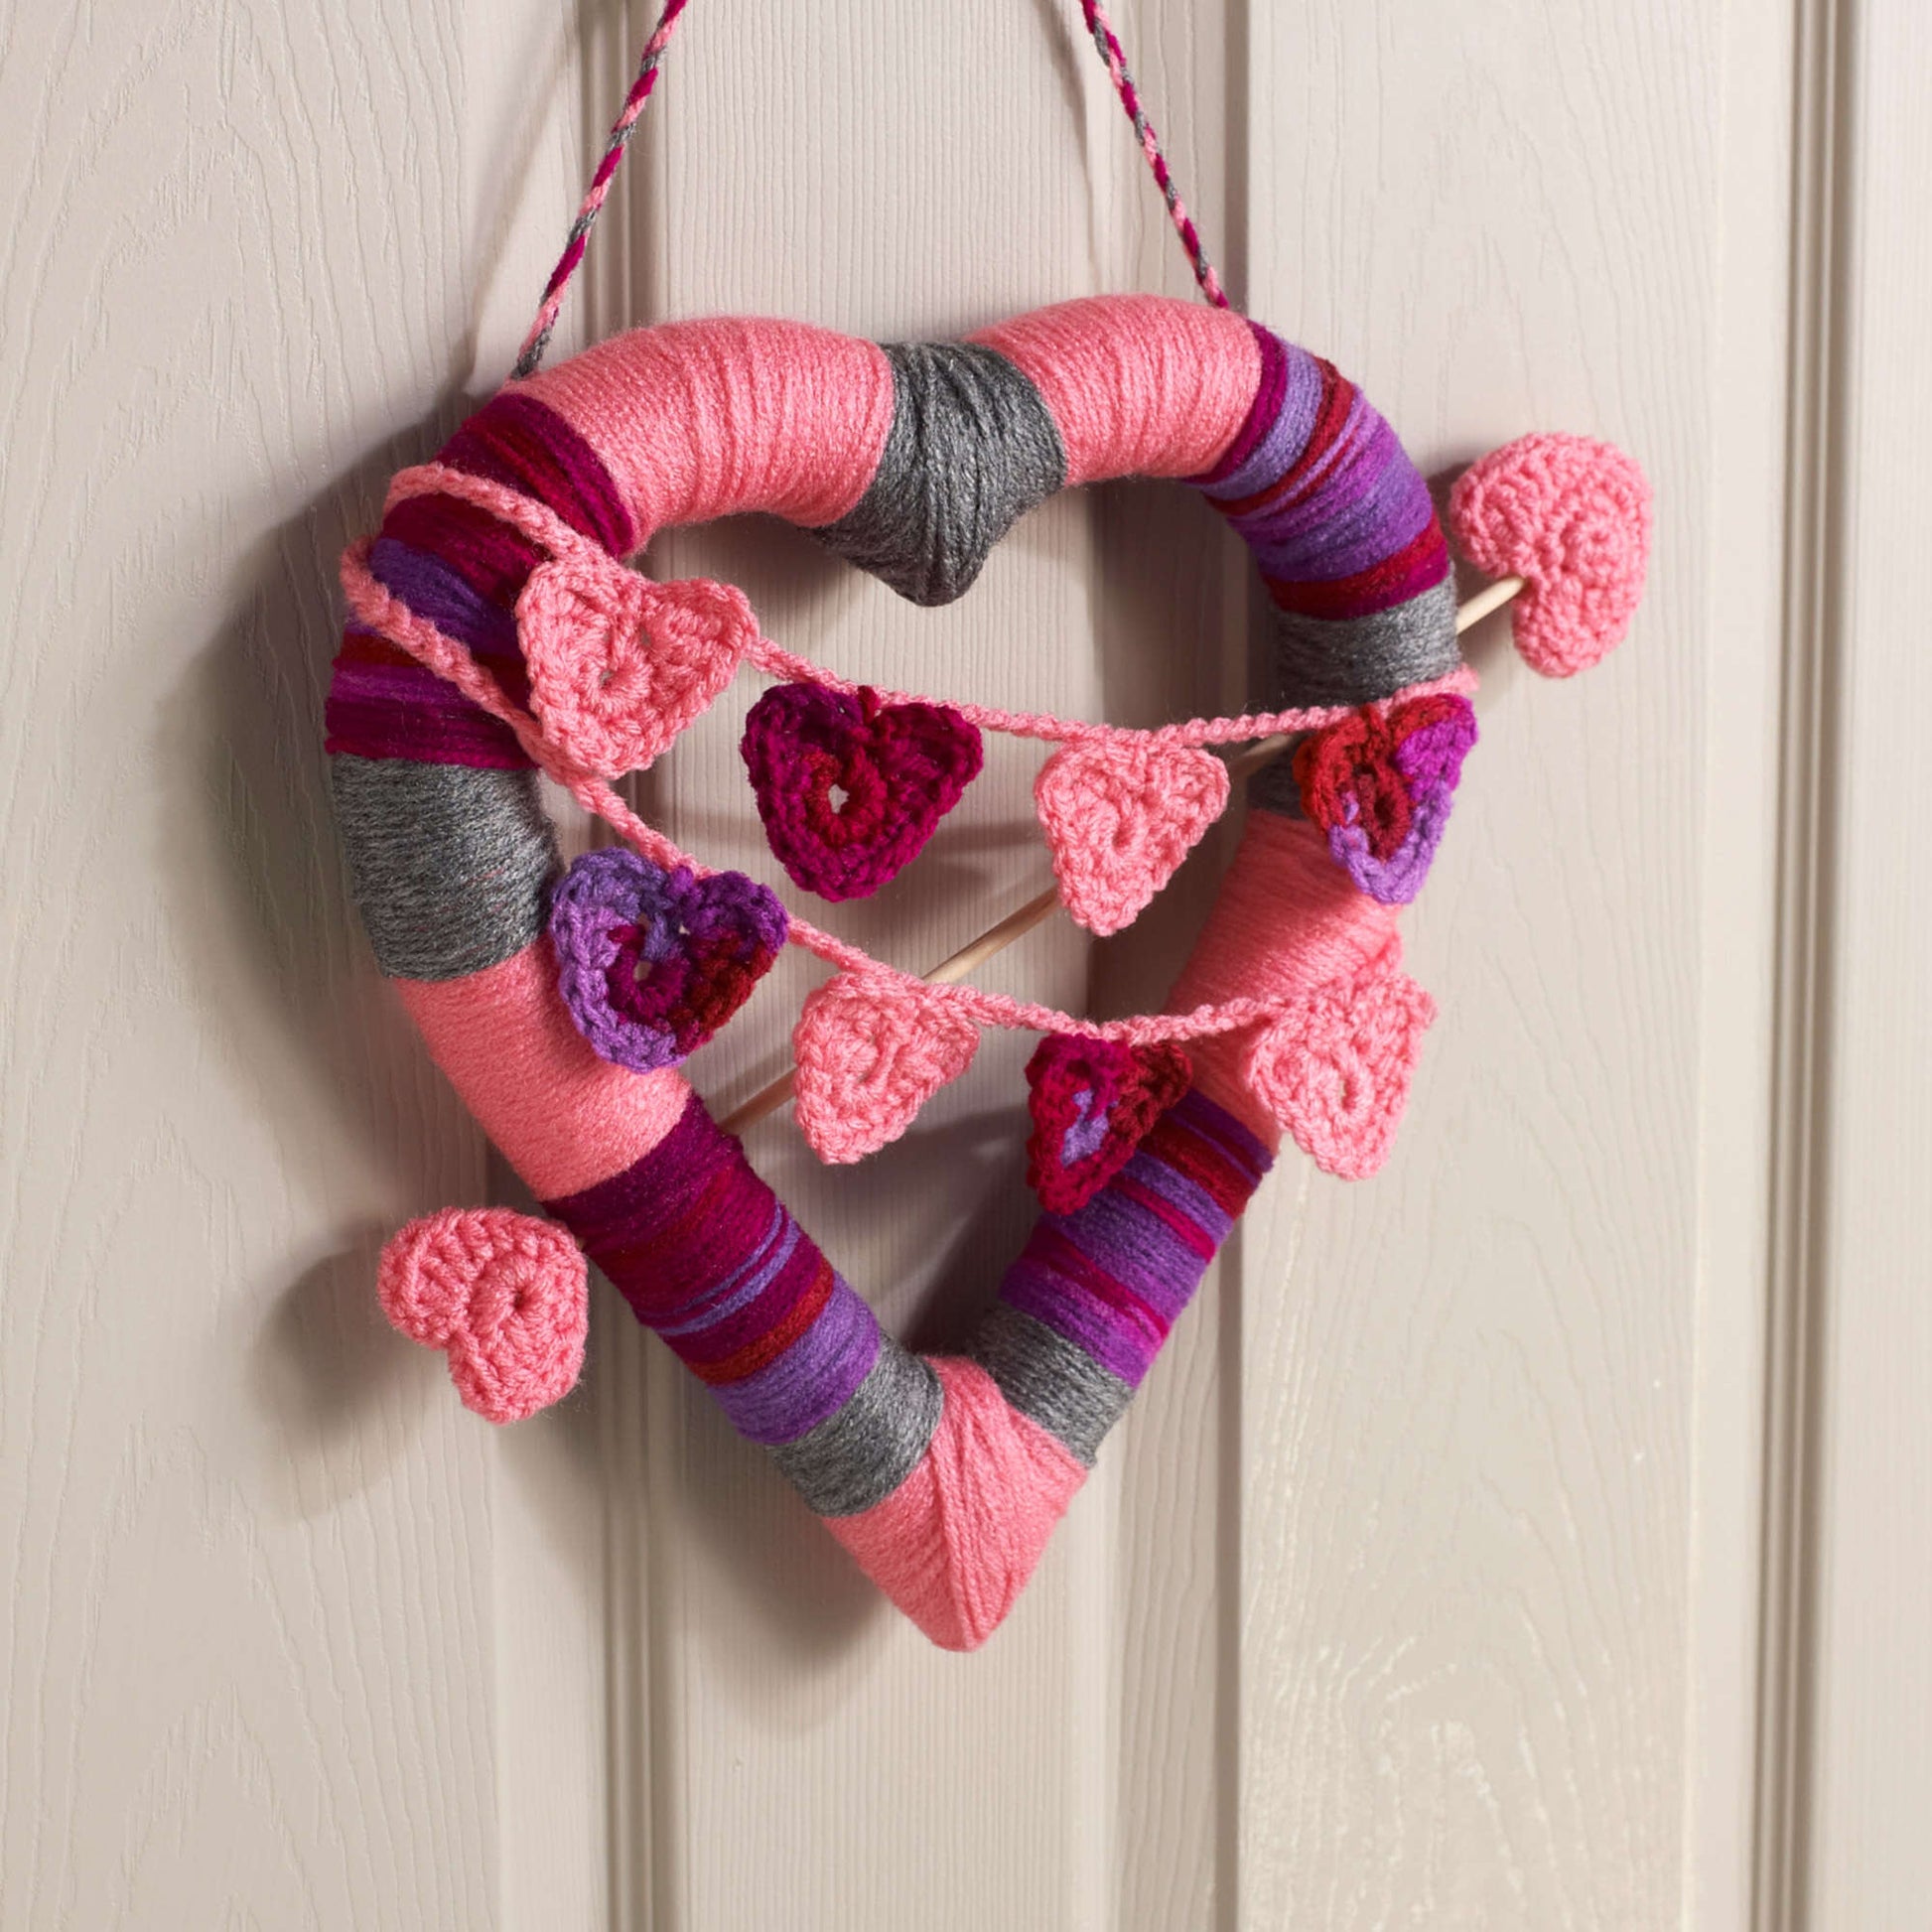 Free Red Heart Crochet Valentine Heart Wreath Pattern